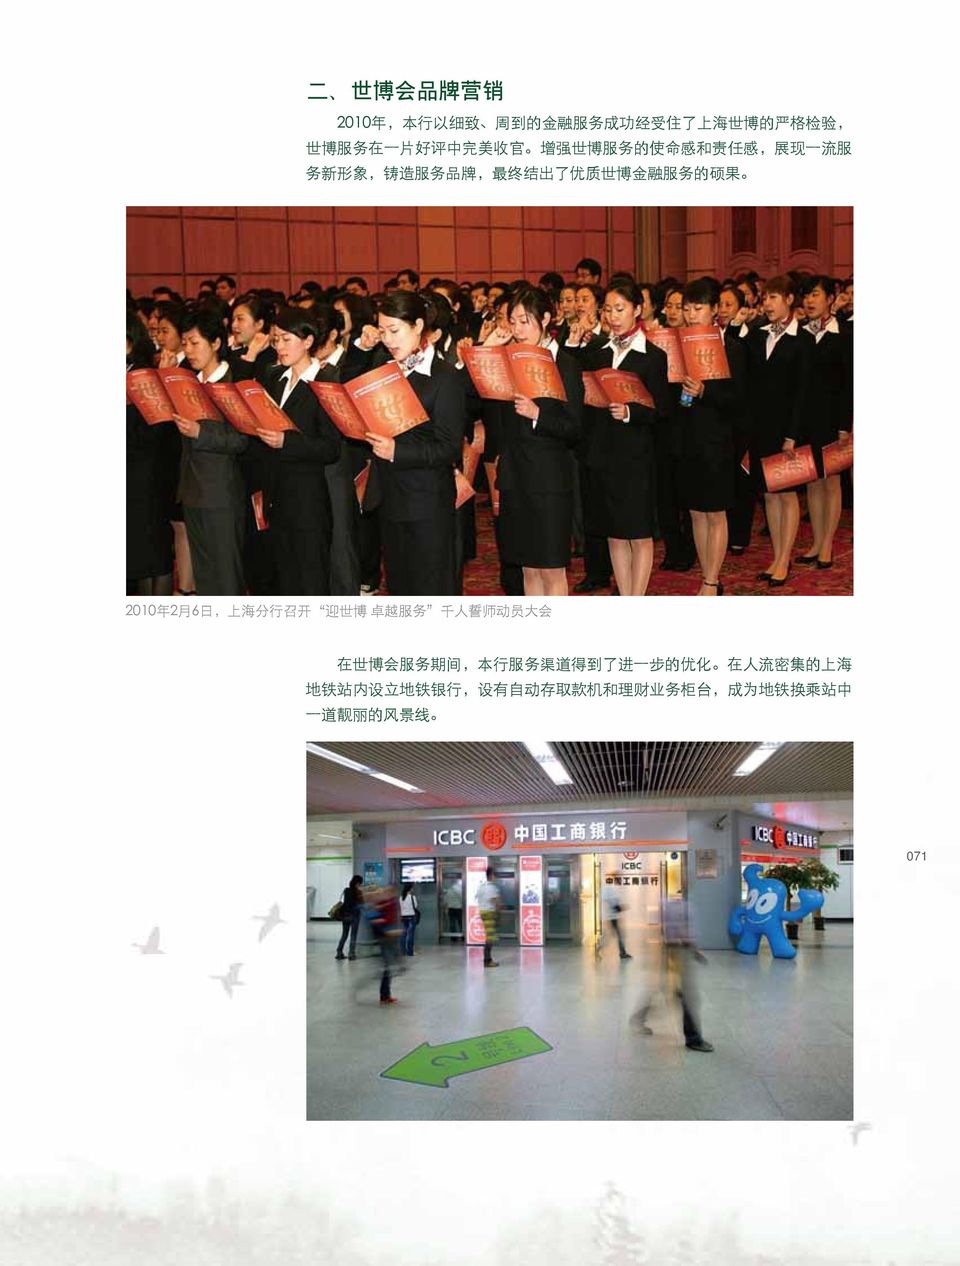 2010 年 2 月 6 日, 上 海 分 行 召 开 迎 世 博 卓 越 服 务 千 人 誓 师 动 员 大 会 在 世 博 会 服 务 期 间, 本 行 服 务 渠 道 得 到 了 进 一 步 的